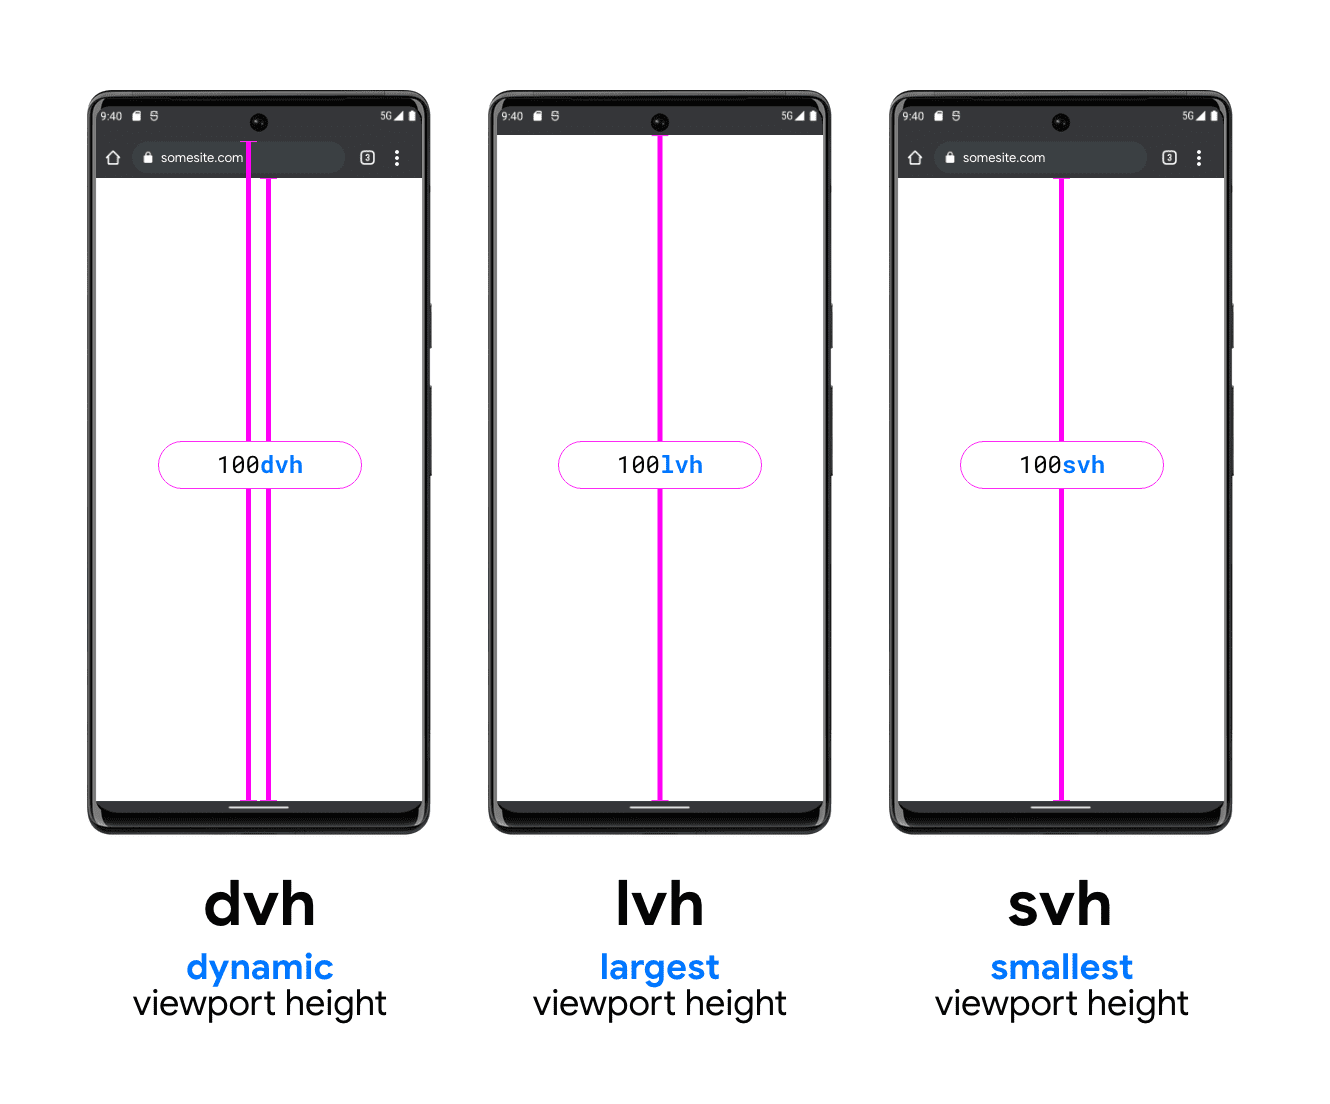 یک تصویر گرافیکی با سه تلفن برای کمک به نشان دادن DVH، LVH و SVH. تلفن نمونه DVH دو خط عمودی دارد، یکی بین پایین نوار جستجو و پایین درگاه دید و یکی بین بالای نوار جستجو (زیر نوار وضعیت سیستم) تا پایین درگاه دید. نشان می دهد که چگونه DVH می تواند یکی از این دو طول باشد. LVH در وسط با یک خط بین پایین نوار وضعیت دستگاه و دکمه درگاه نمای تلفن نشان داده شده است. آخرین نمونه واحد SVH است که یک خط از پایین نوار جستجوی مرورگر تا پایین درگاه نمایش را نشان می دهد.